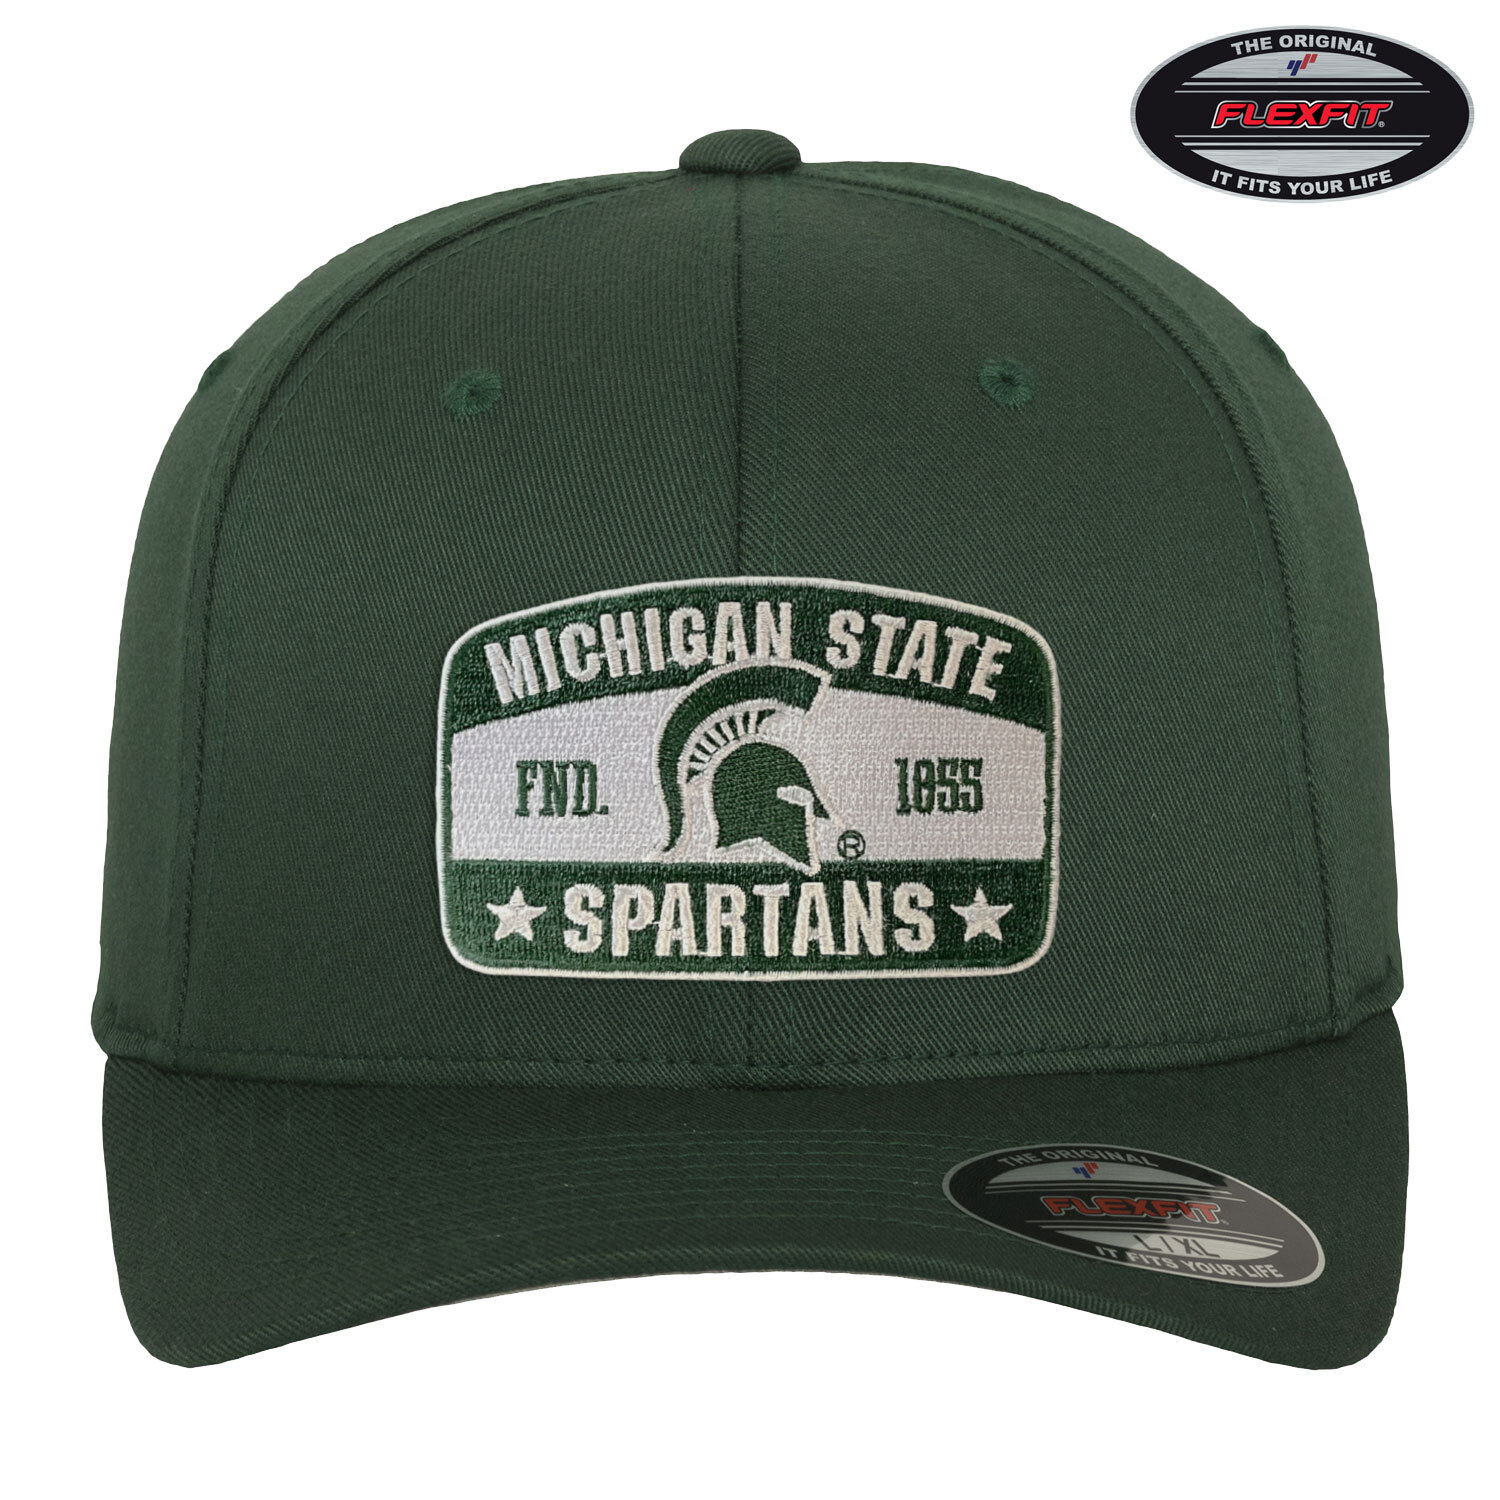 Michigan State Spartans Flexfit Cap